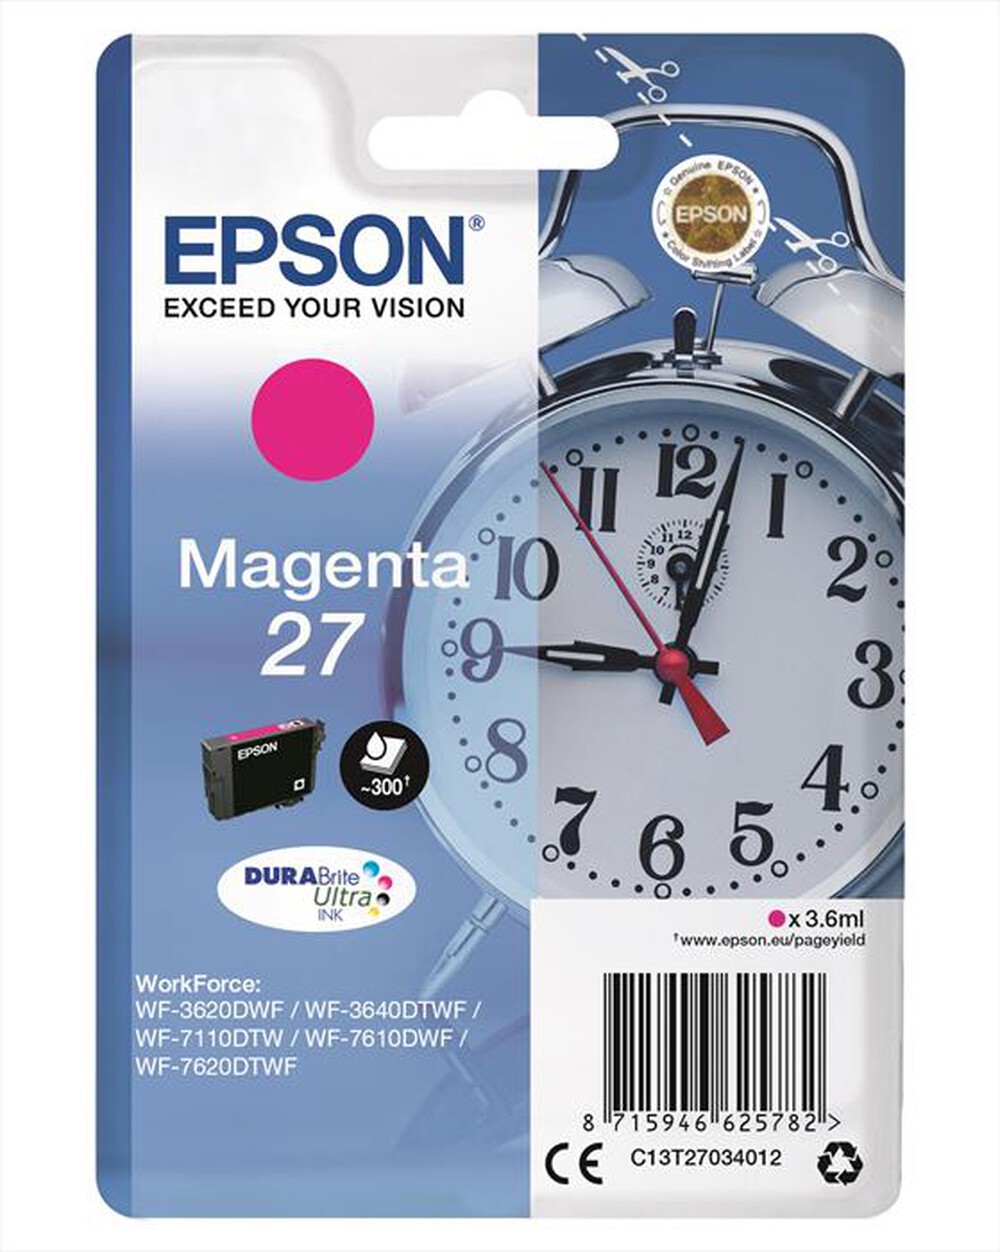 "EPSON - C13T27034022 - Magenta"